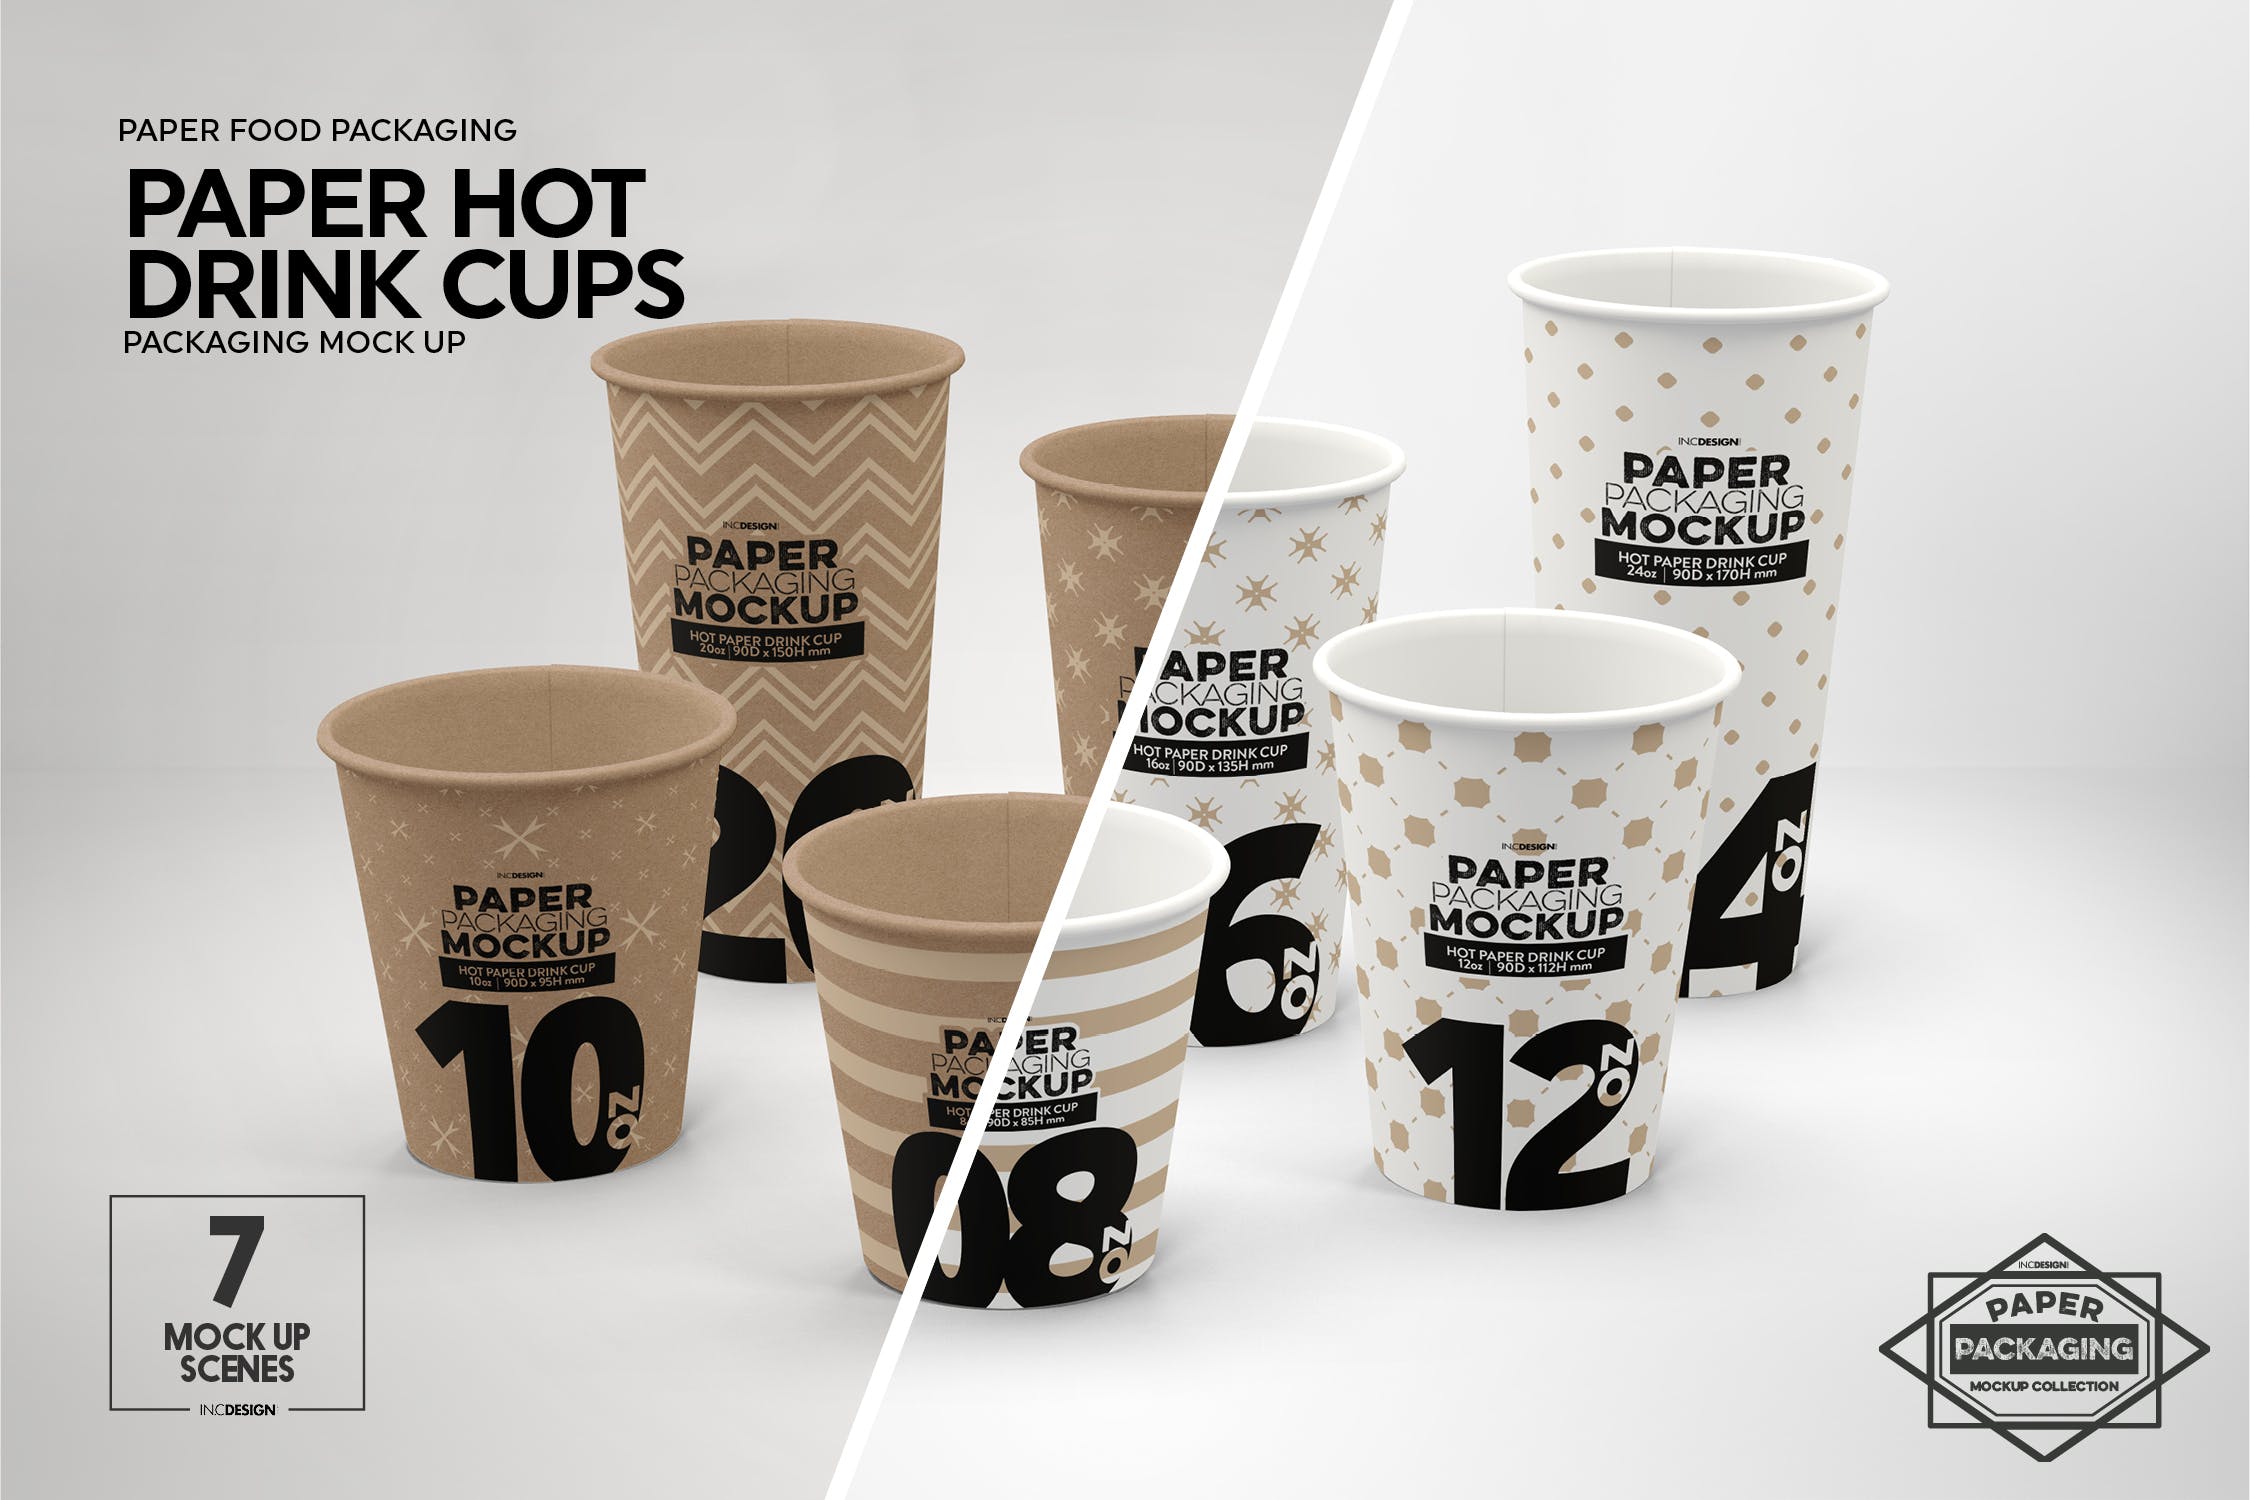 热饮一次性纸杯外观设计非凡图库精选 Paper Hot Drink Cups Packaging Mockup插图(2)